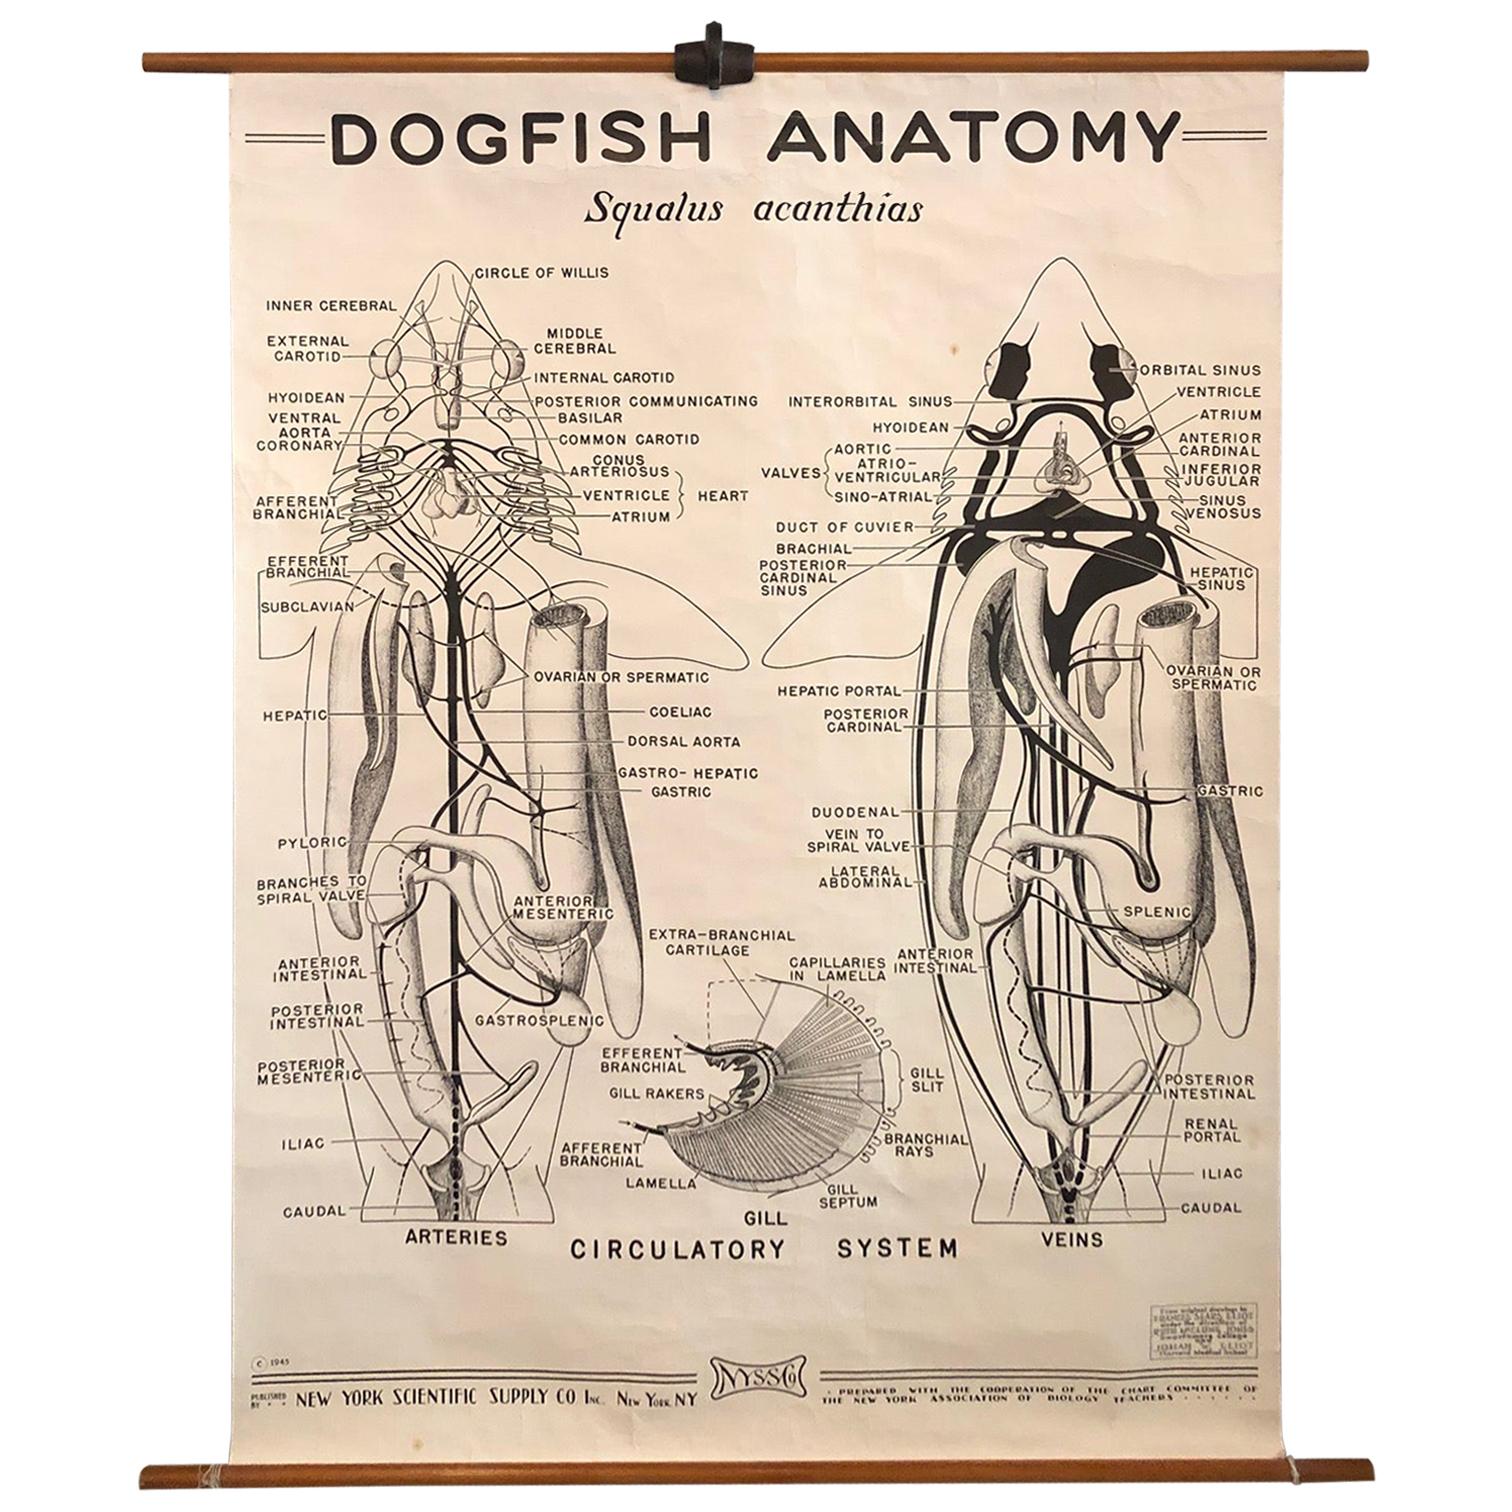 Tableau d'anatomie zoologique d'un chien de chasse par la New York Scientific Co.